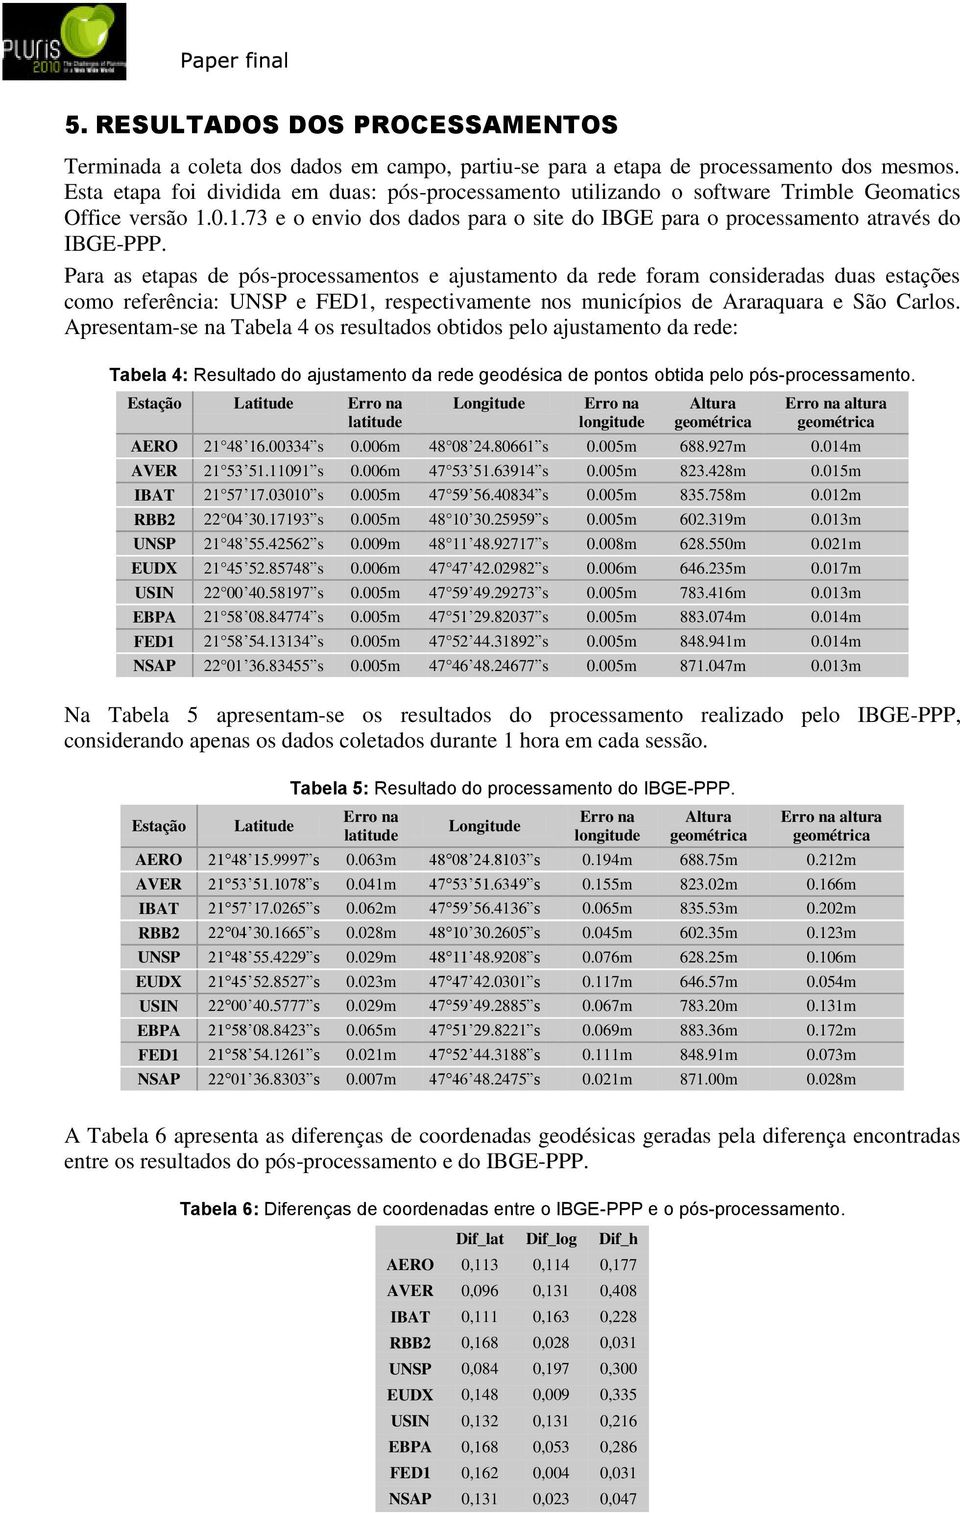 Para as etapas de pós-processamentos e ajustamento da rede foram consideradas duas estações como referência: UNSP e FED1, respectivamente nos municípios de Araraquara e São Carlos.